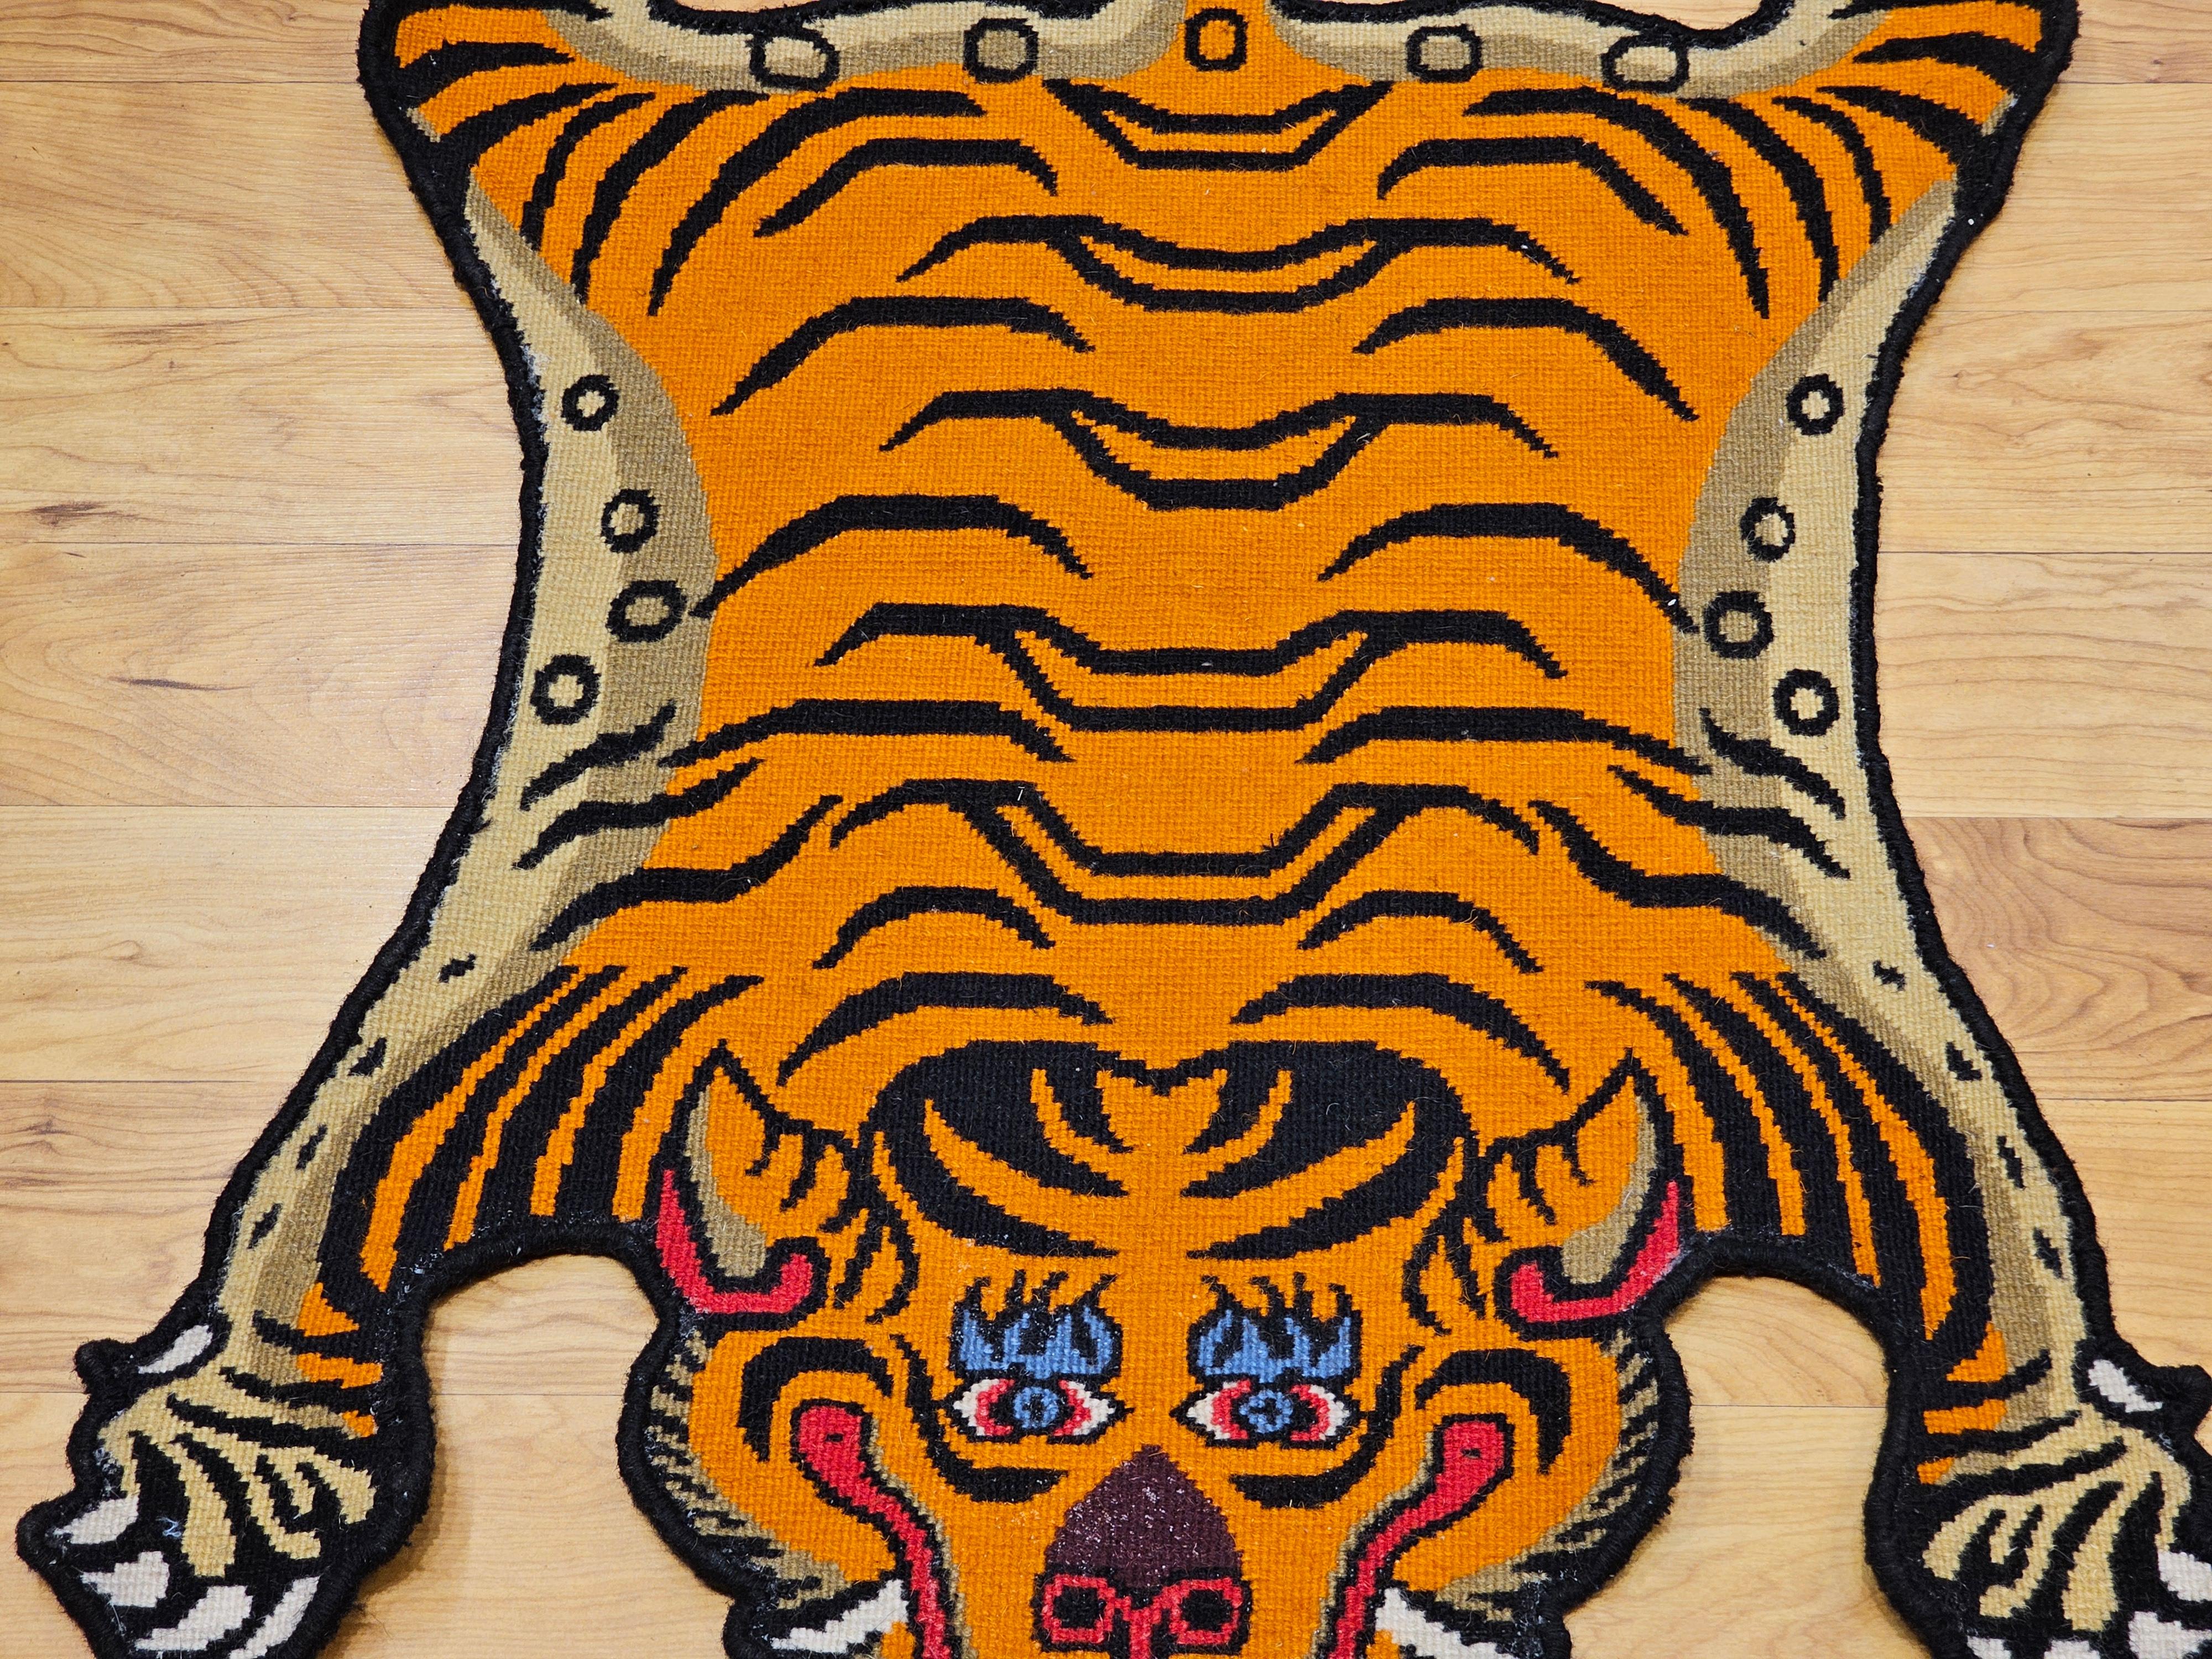 Tibetischer Vintage-Teppich in Tigerform in Orange, Schwarz, Rot und Blau.  Der Teppich hat die Form eines Tigerfells, das sich flach auf den Boden legt.  Die Grundfarbe ist leuchtend orange mit schwarzer Zeichnung.  Der Teppich kann auf dem Boden